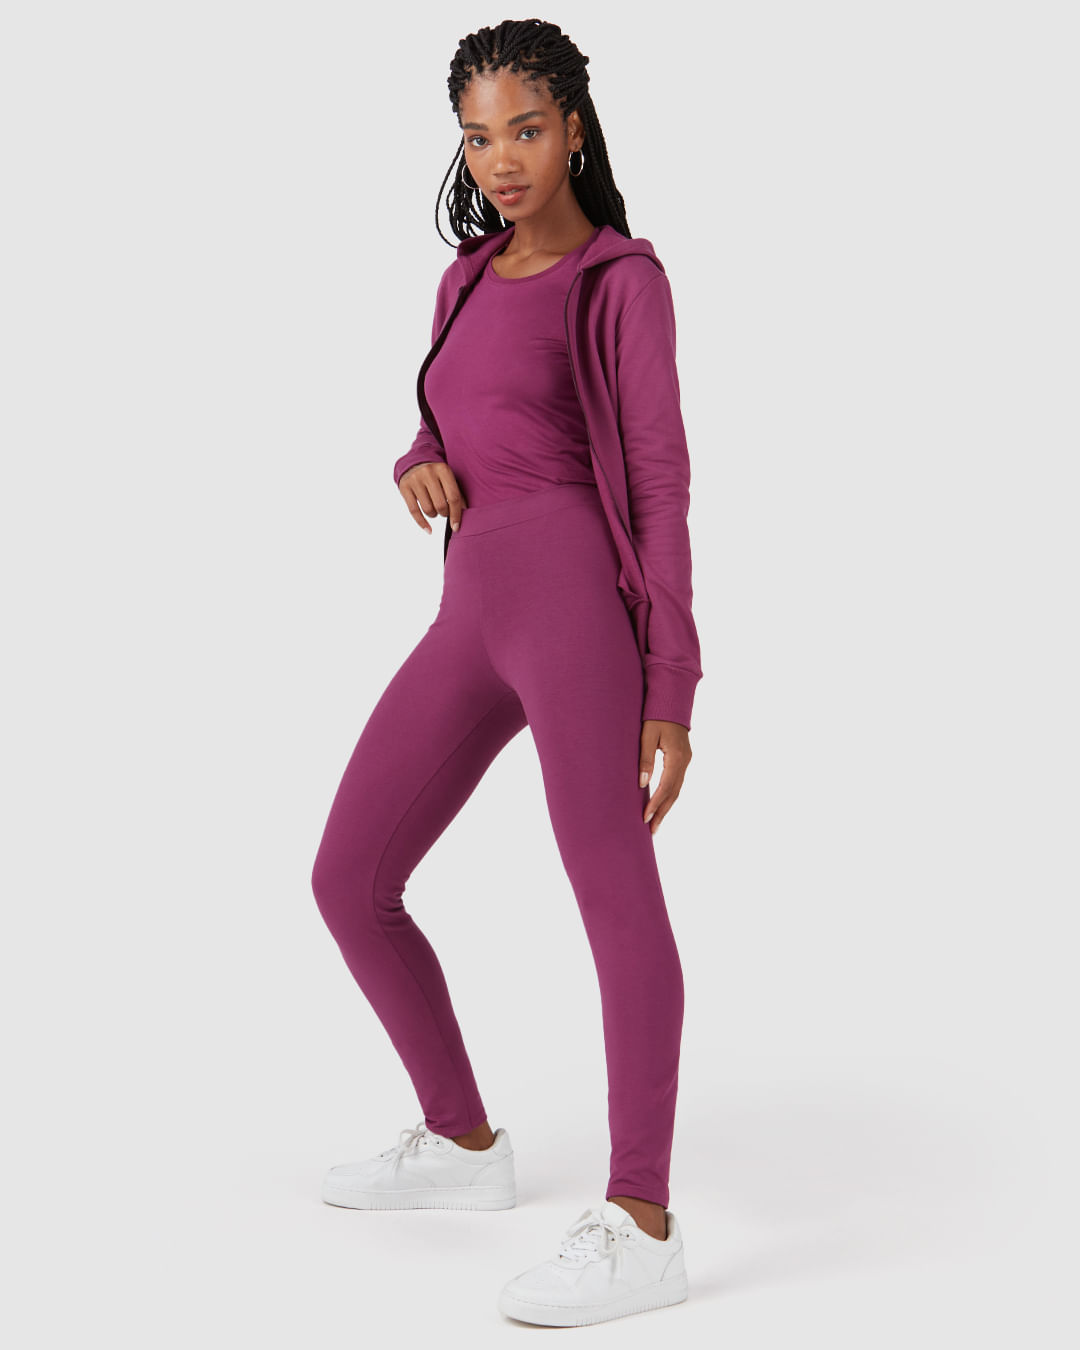 Calça Legging Modeladora com ilhós na lateral - Victorias Fashion Store -  Loja online de moda feminina